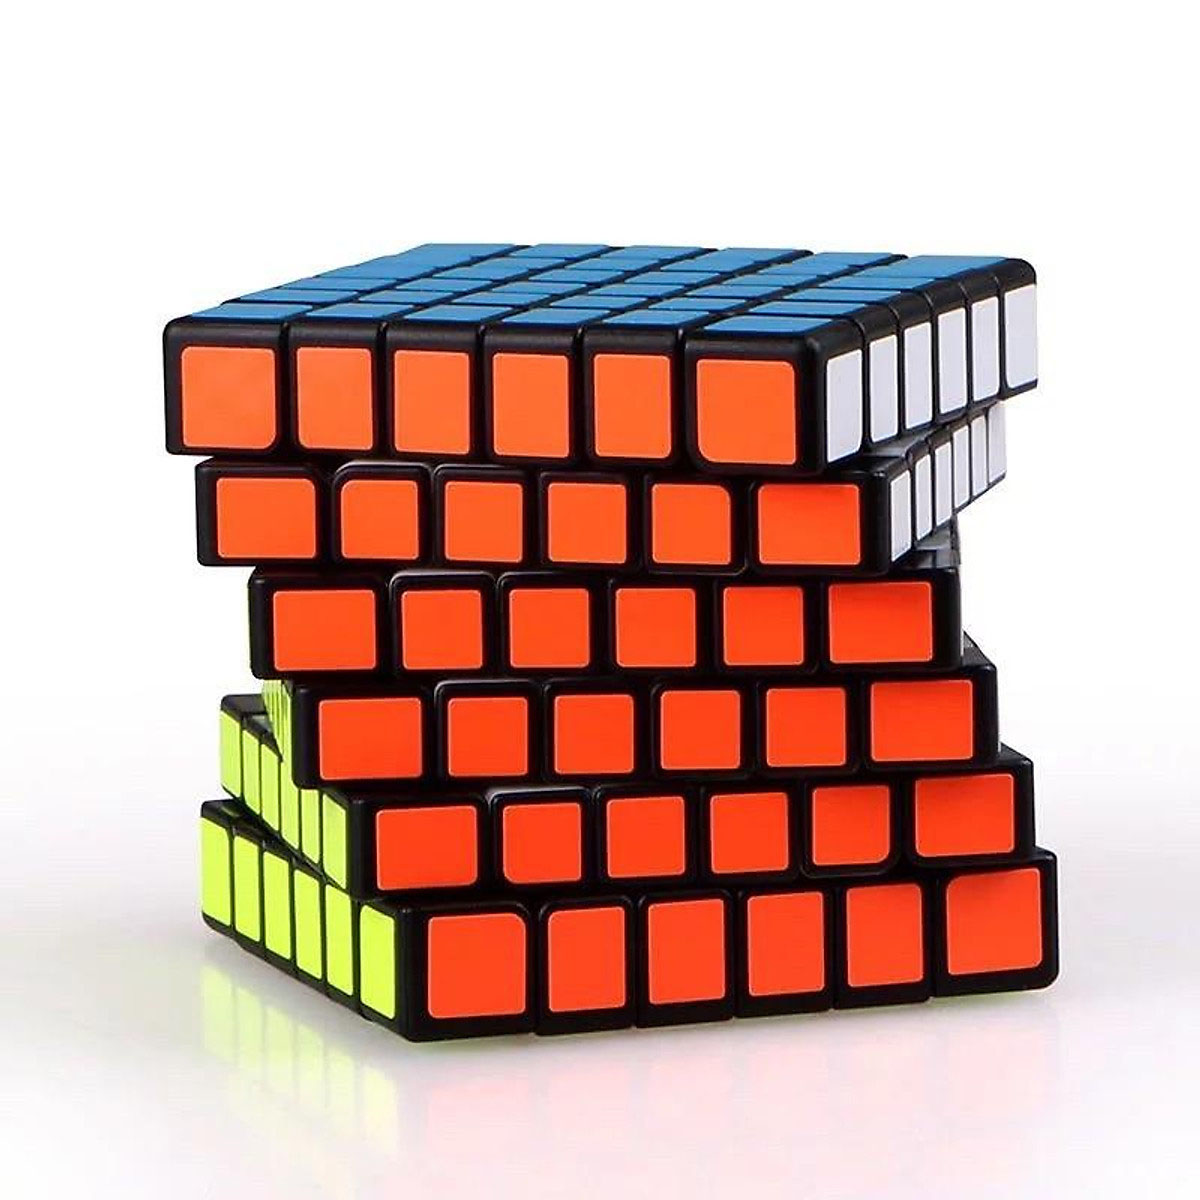 Rubik 6x6 viền đen cao cấp - Tặng kèm chân đế